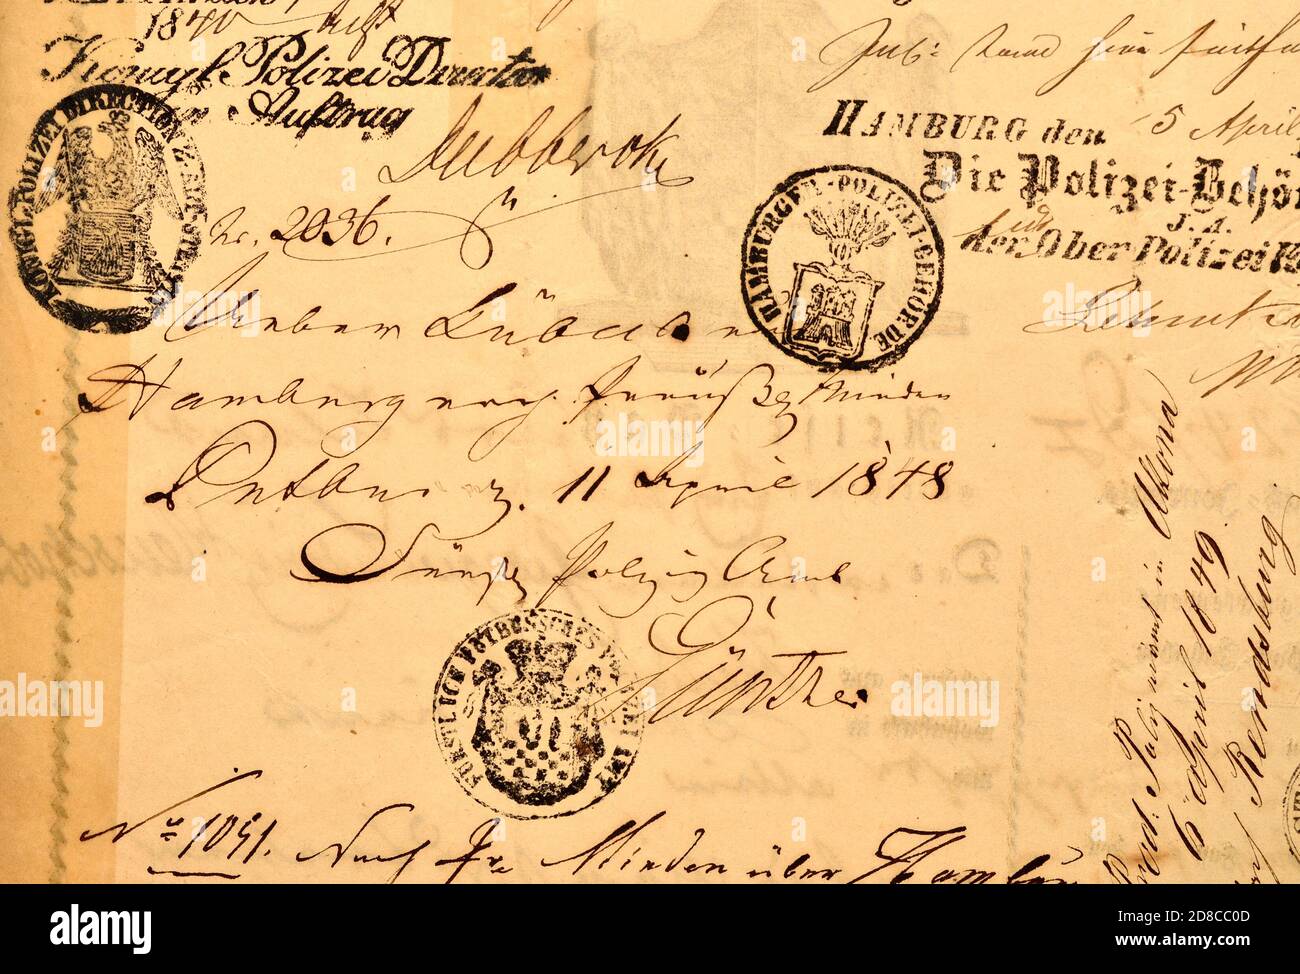 Documento alemán: Pasaporte prusiano (1848/49) con sellos de control fronterizo y detalles escritos a mano Foto de stock